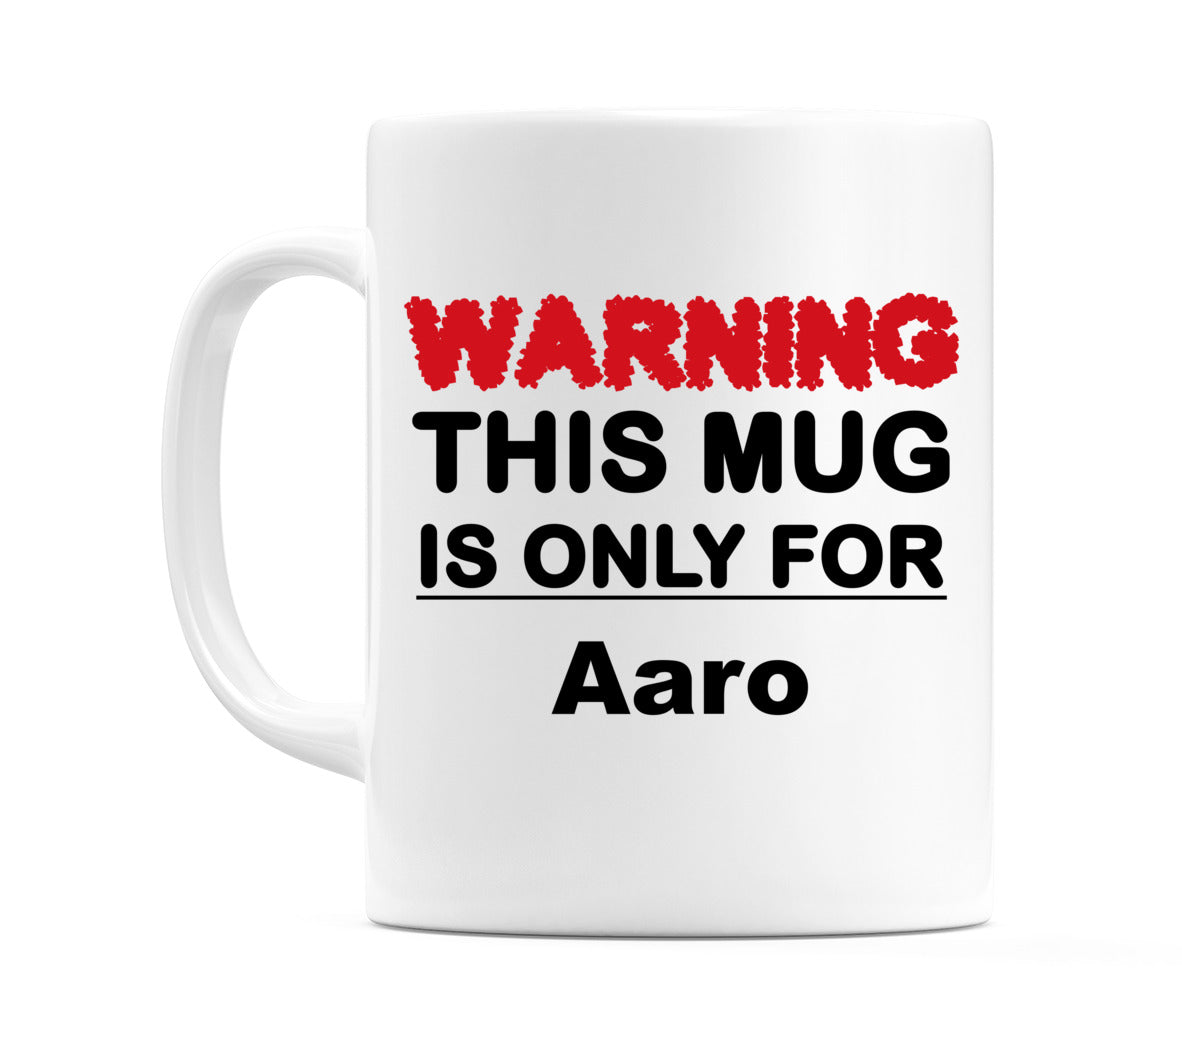 Warning This Mug is ONLY for Aaro Mug